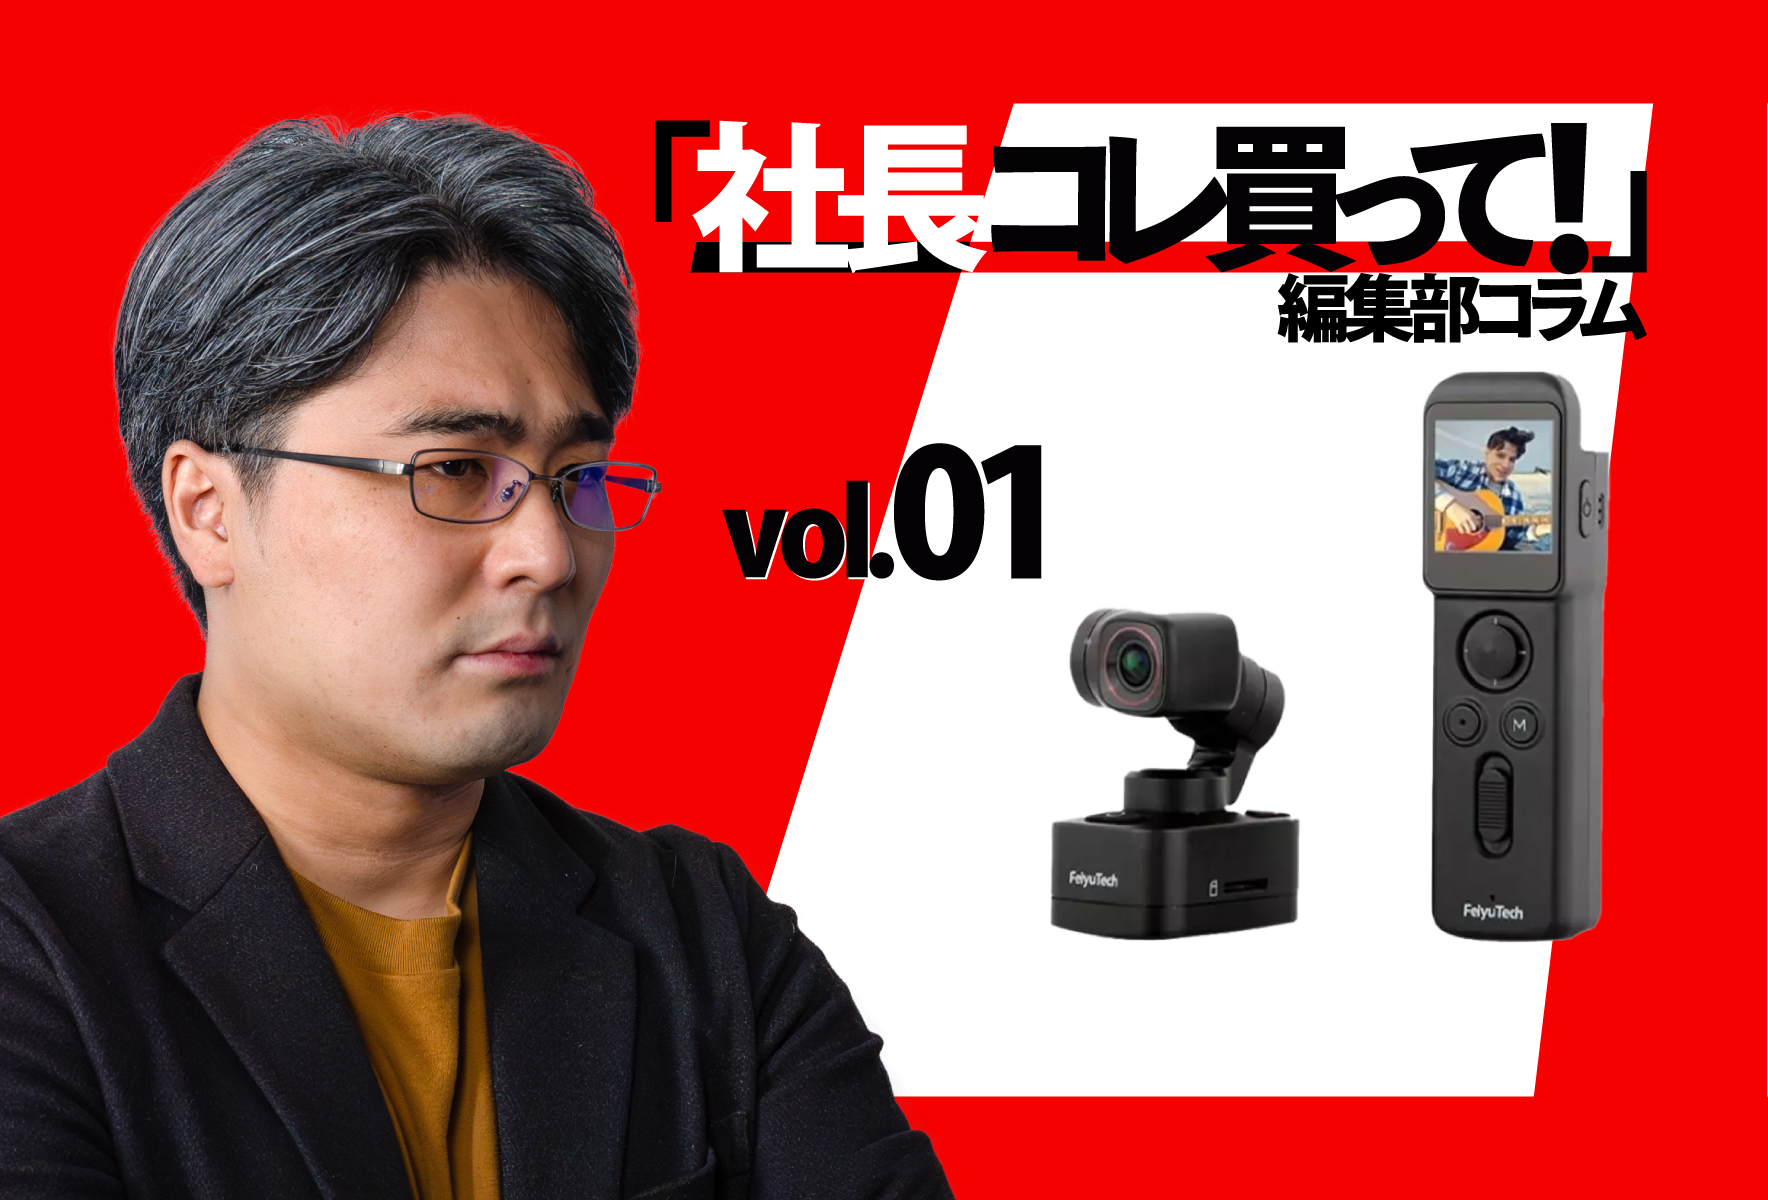 Feiyu Pocket 3：完全ワイヤレスのセパレート型ジンバルカメラ|編集部